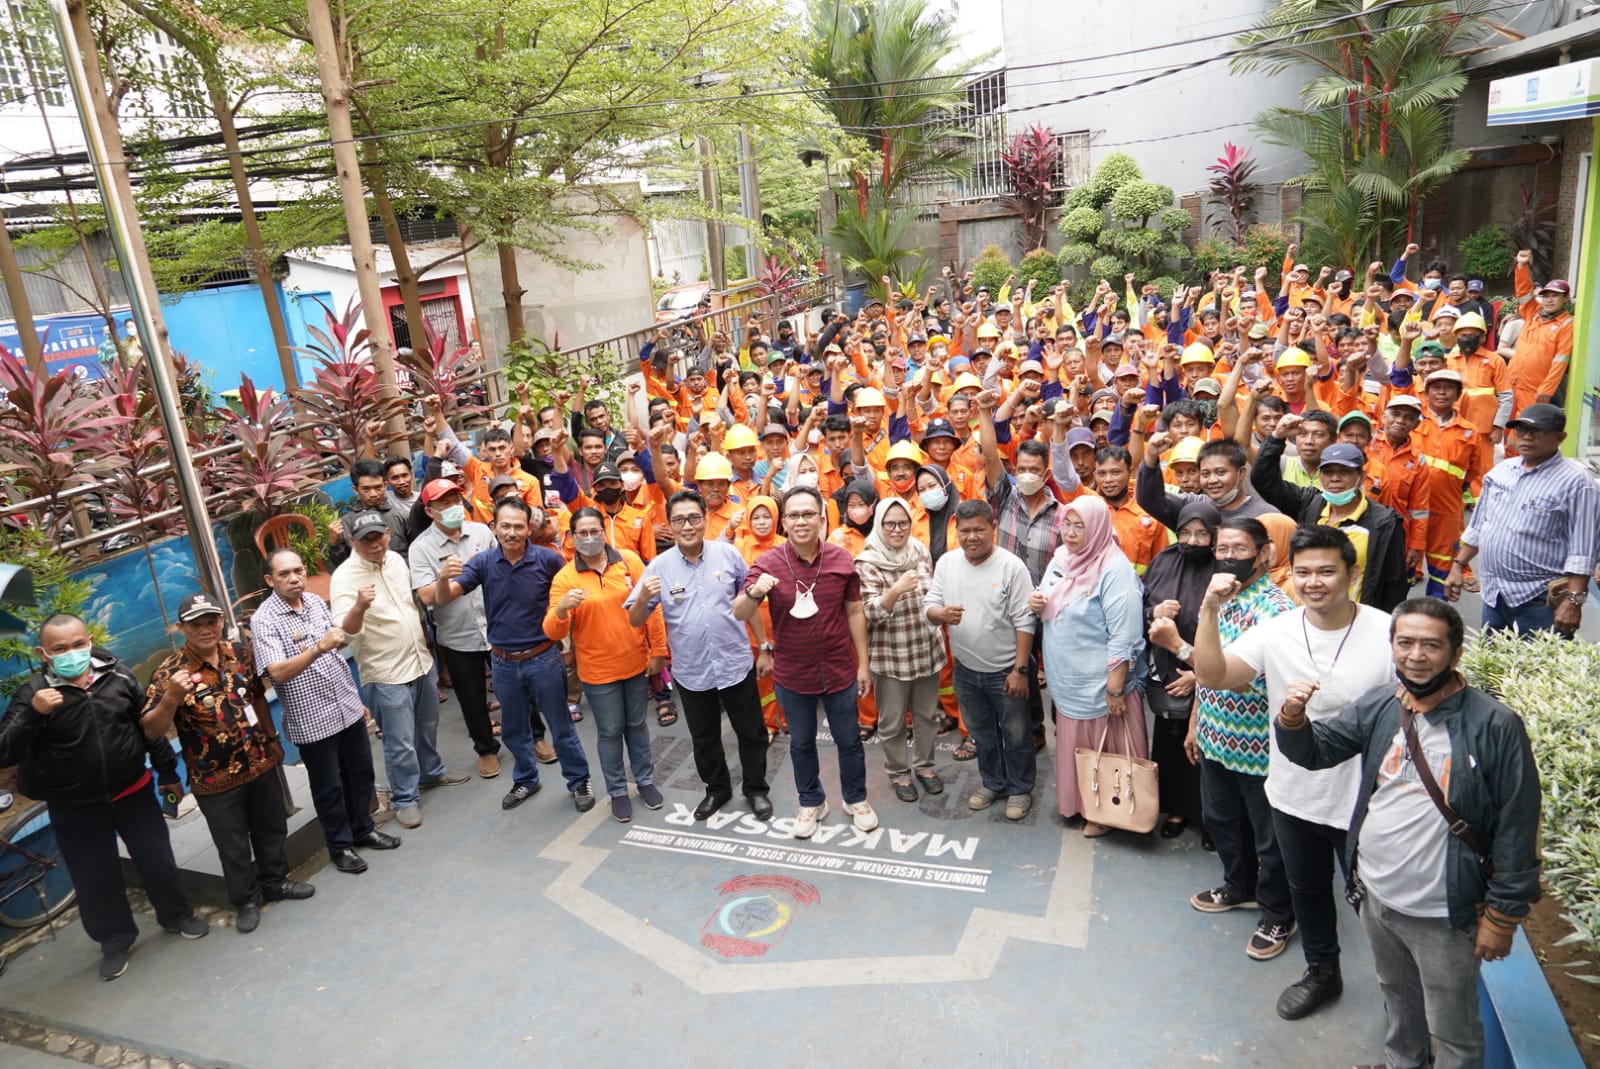 Gambar Kumpulkan Laskar 24 Jam, Camat Makassar  : Saya Harap Rekan-rekan Bekerjasama